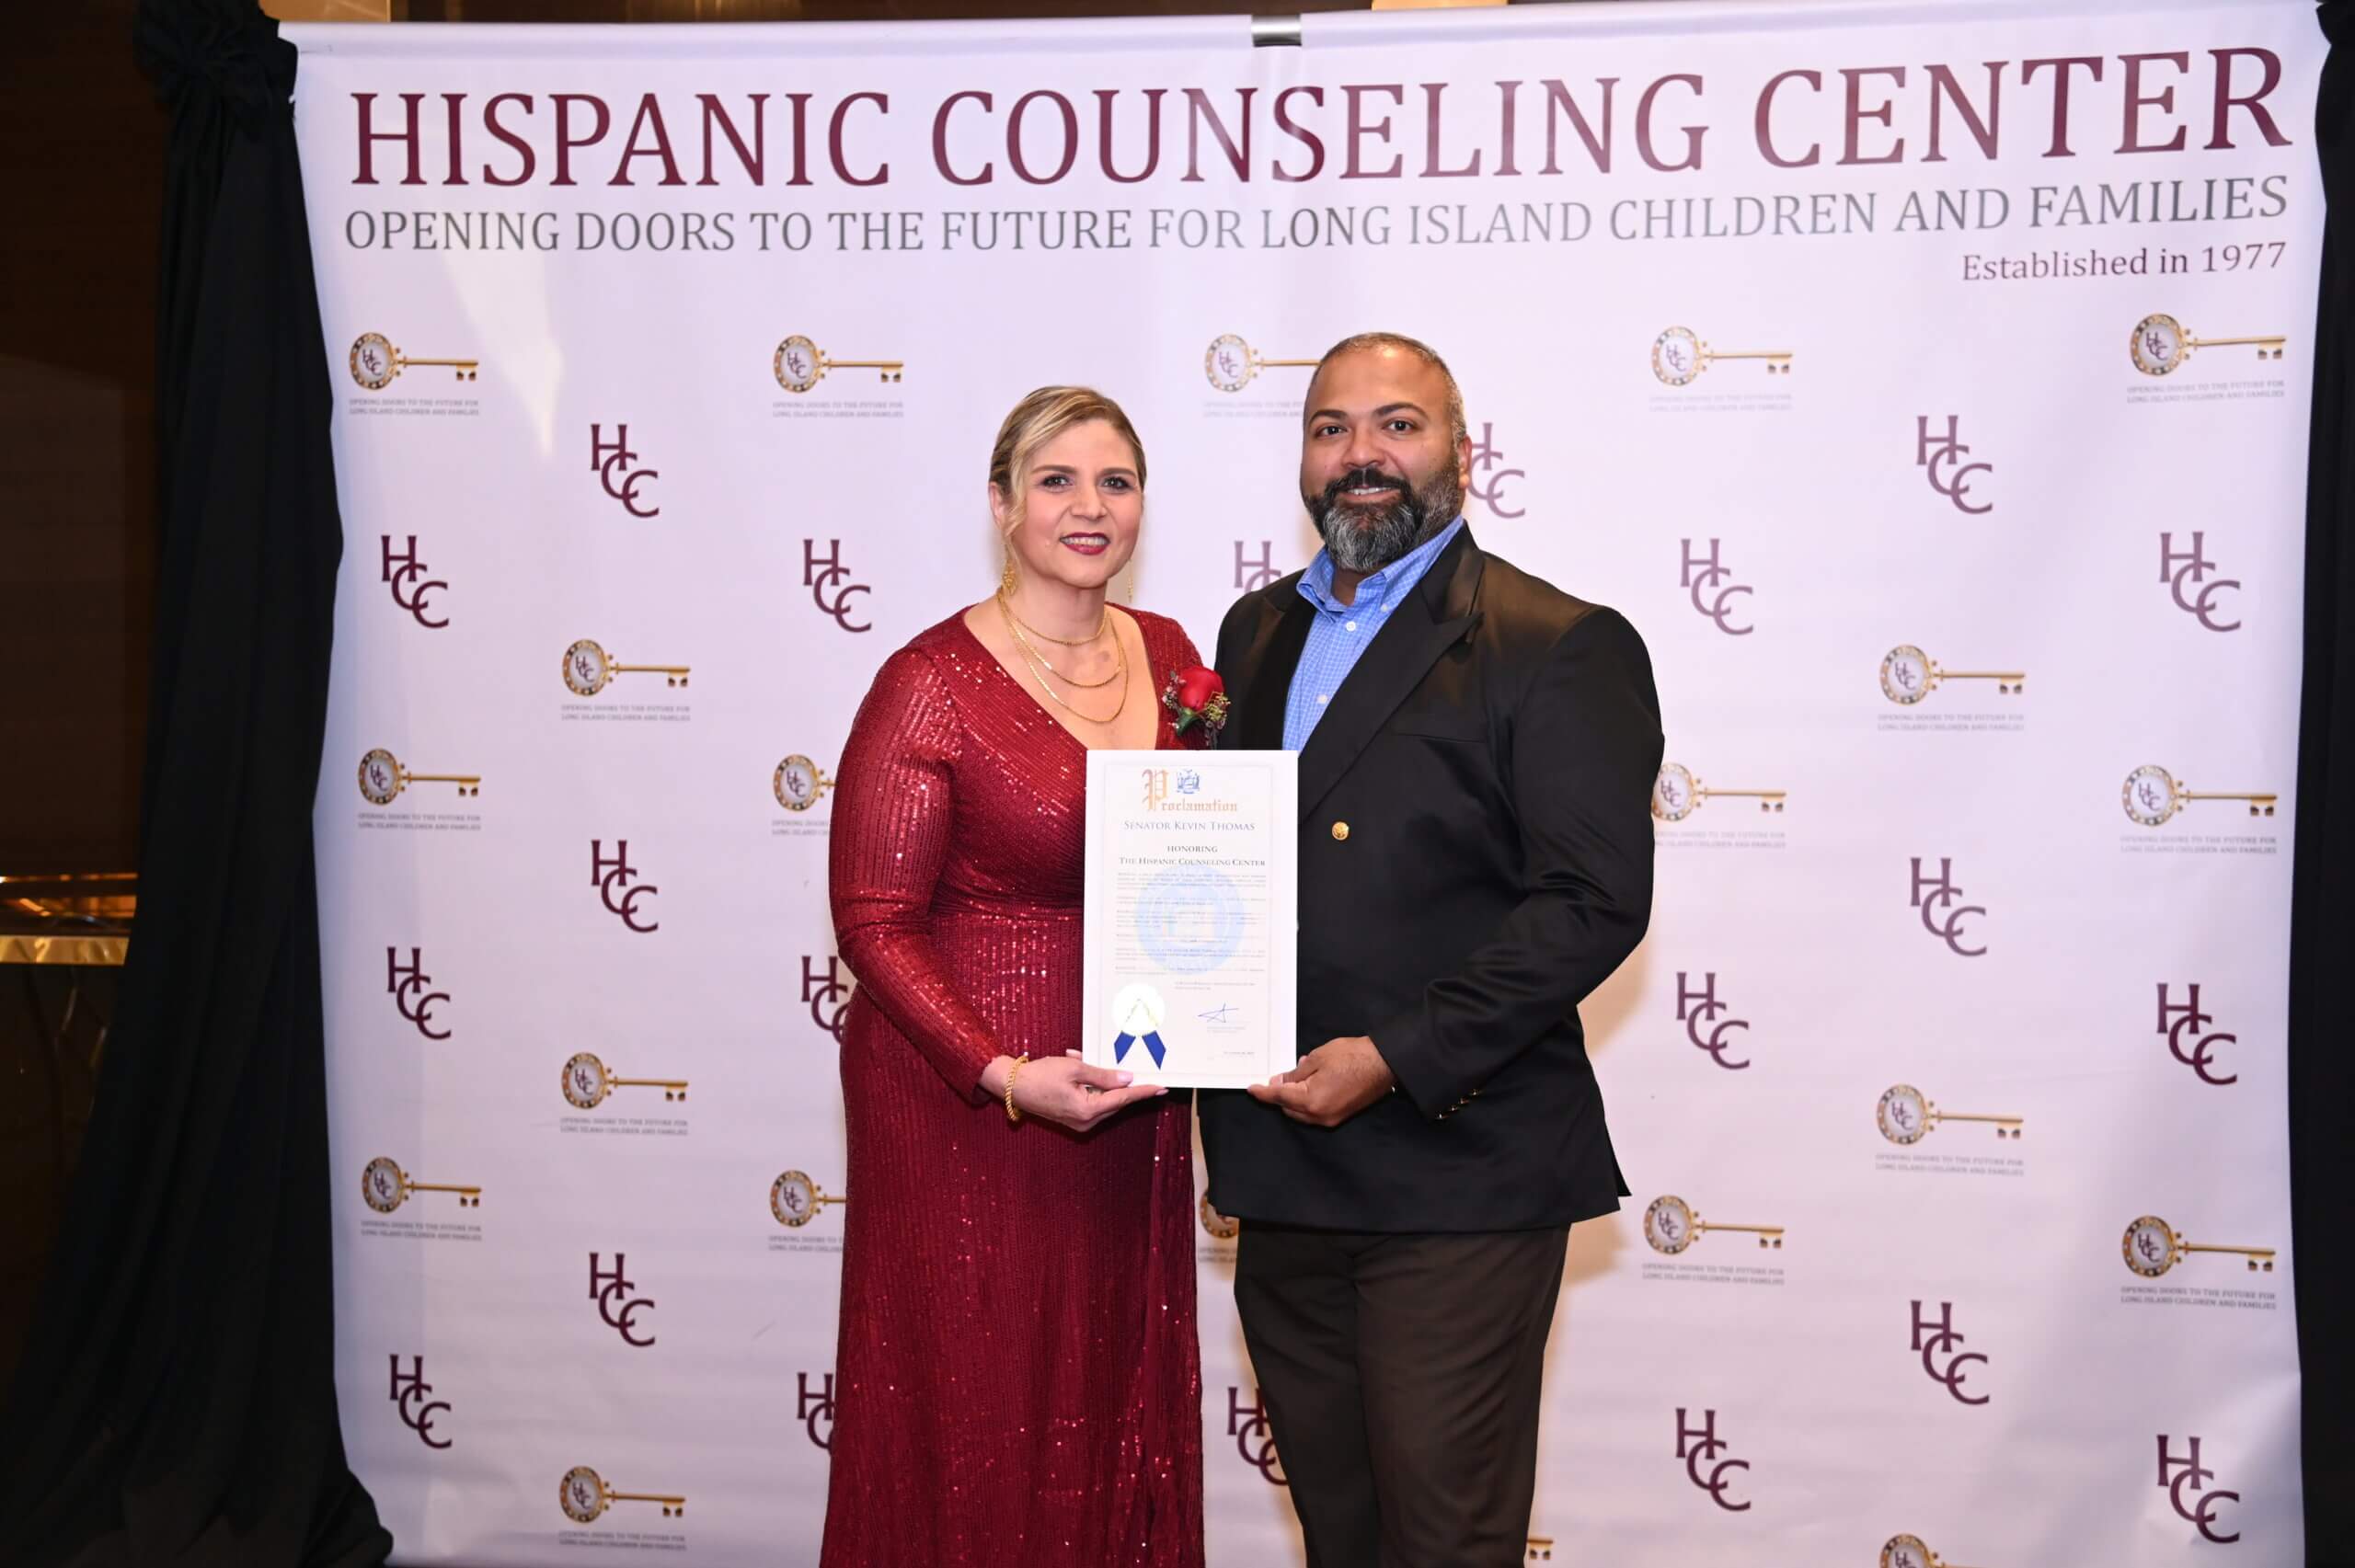 Hispanic Counseling Center celebra la Gala de su 46 aniversario transformando vidas